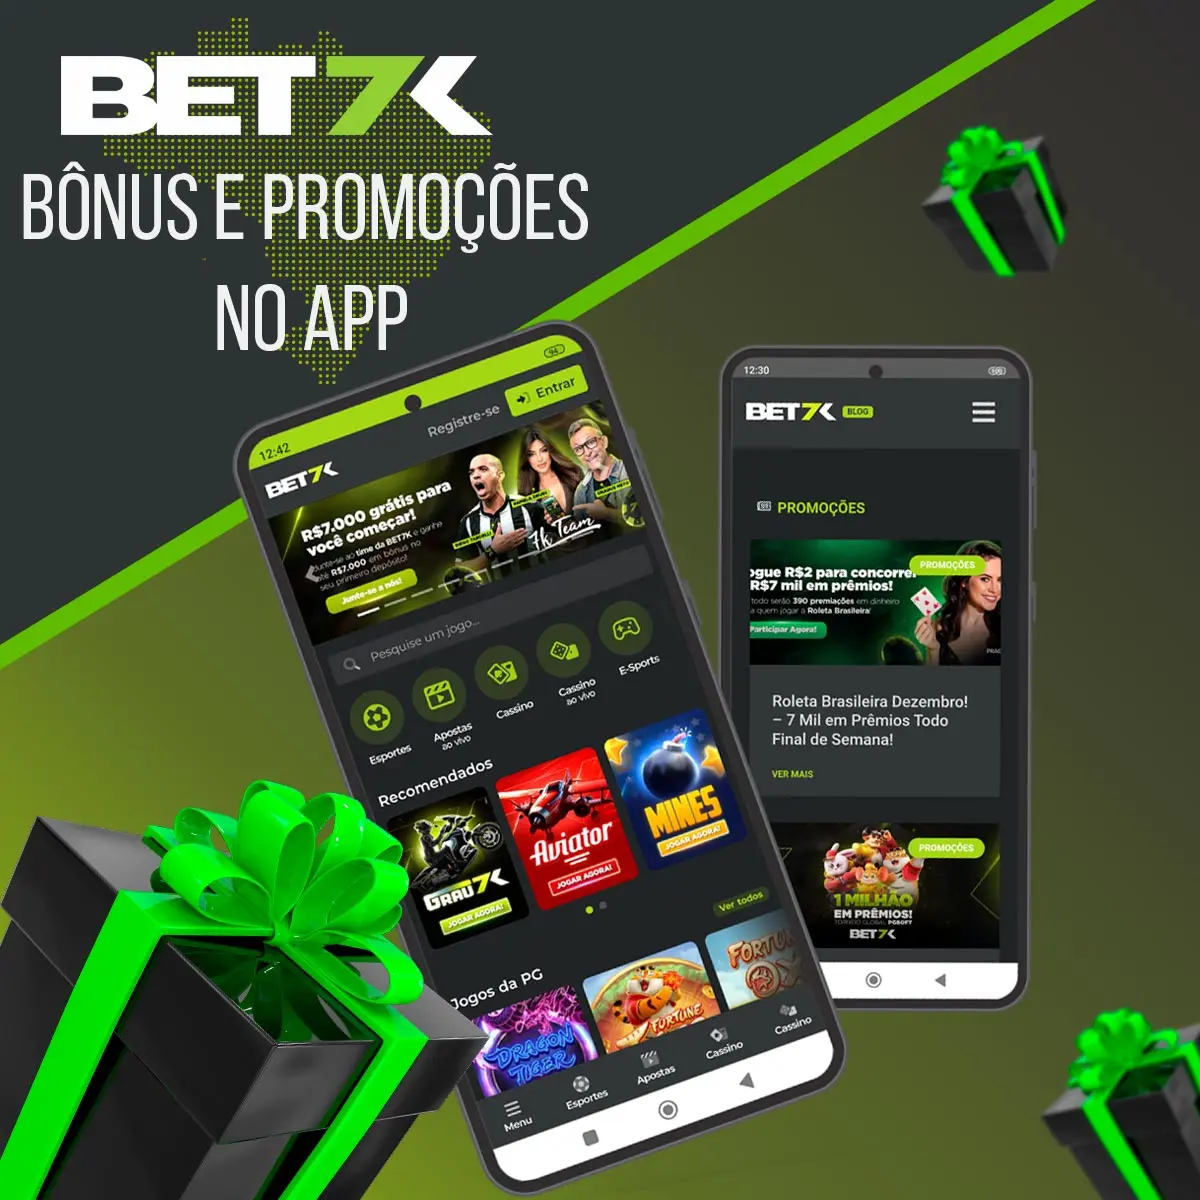 Bônus e promoções da casa de apostas Bet7k no app